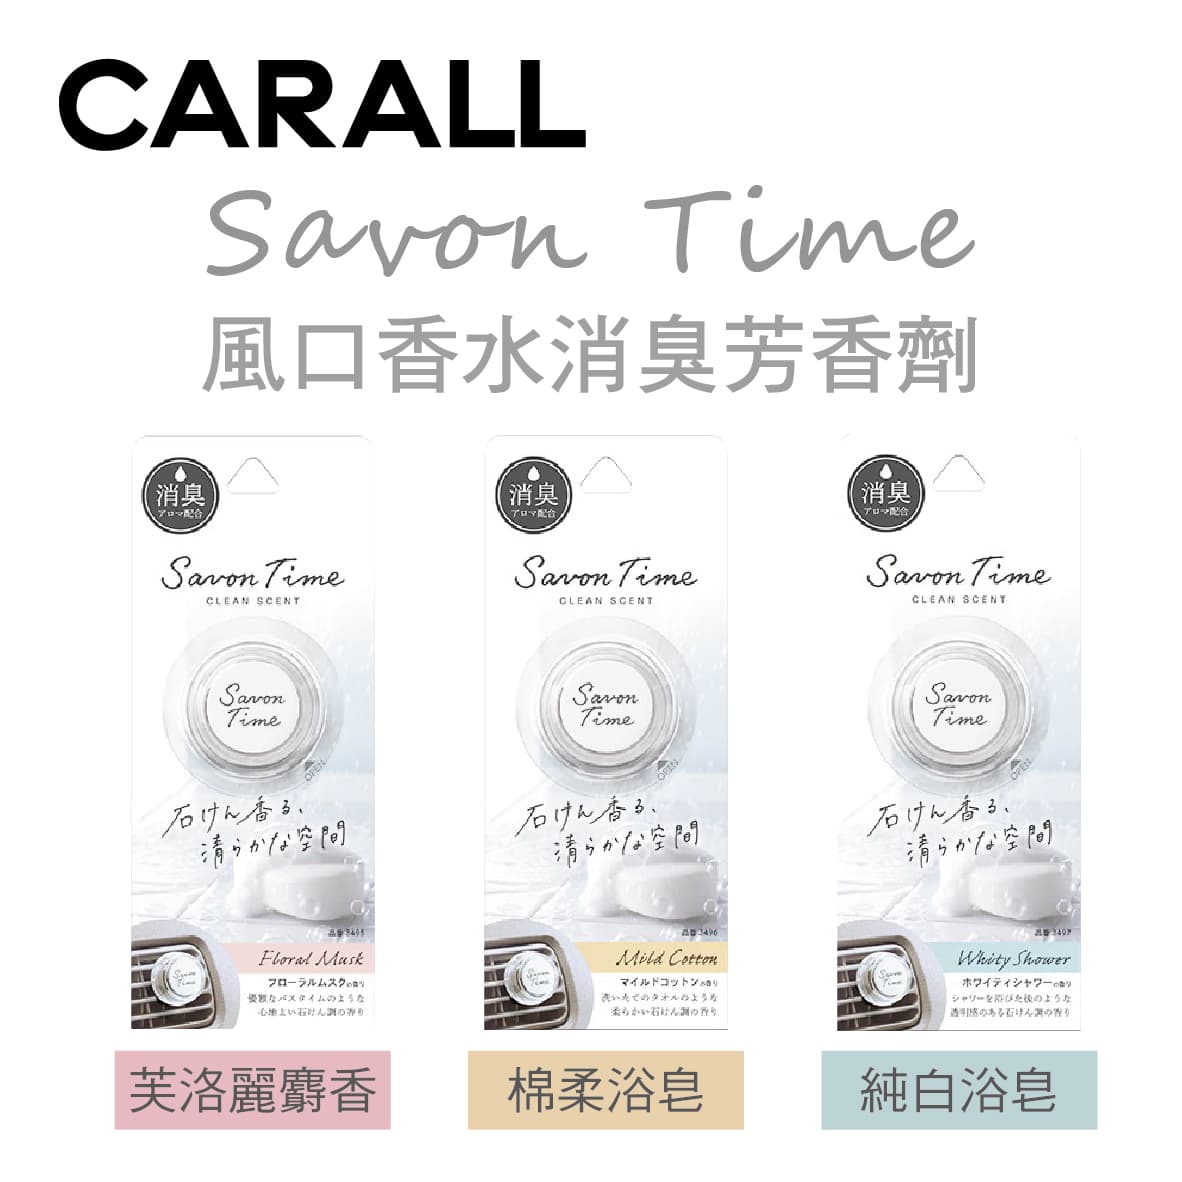 真便宜 CARALL Savon Time 風口香水消臭芳香劑